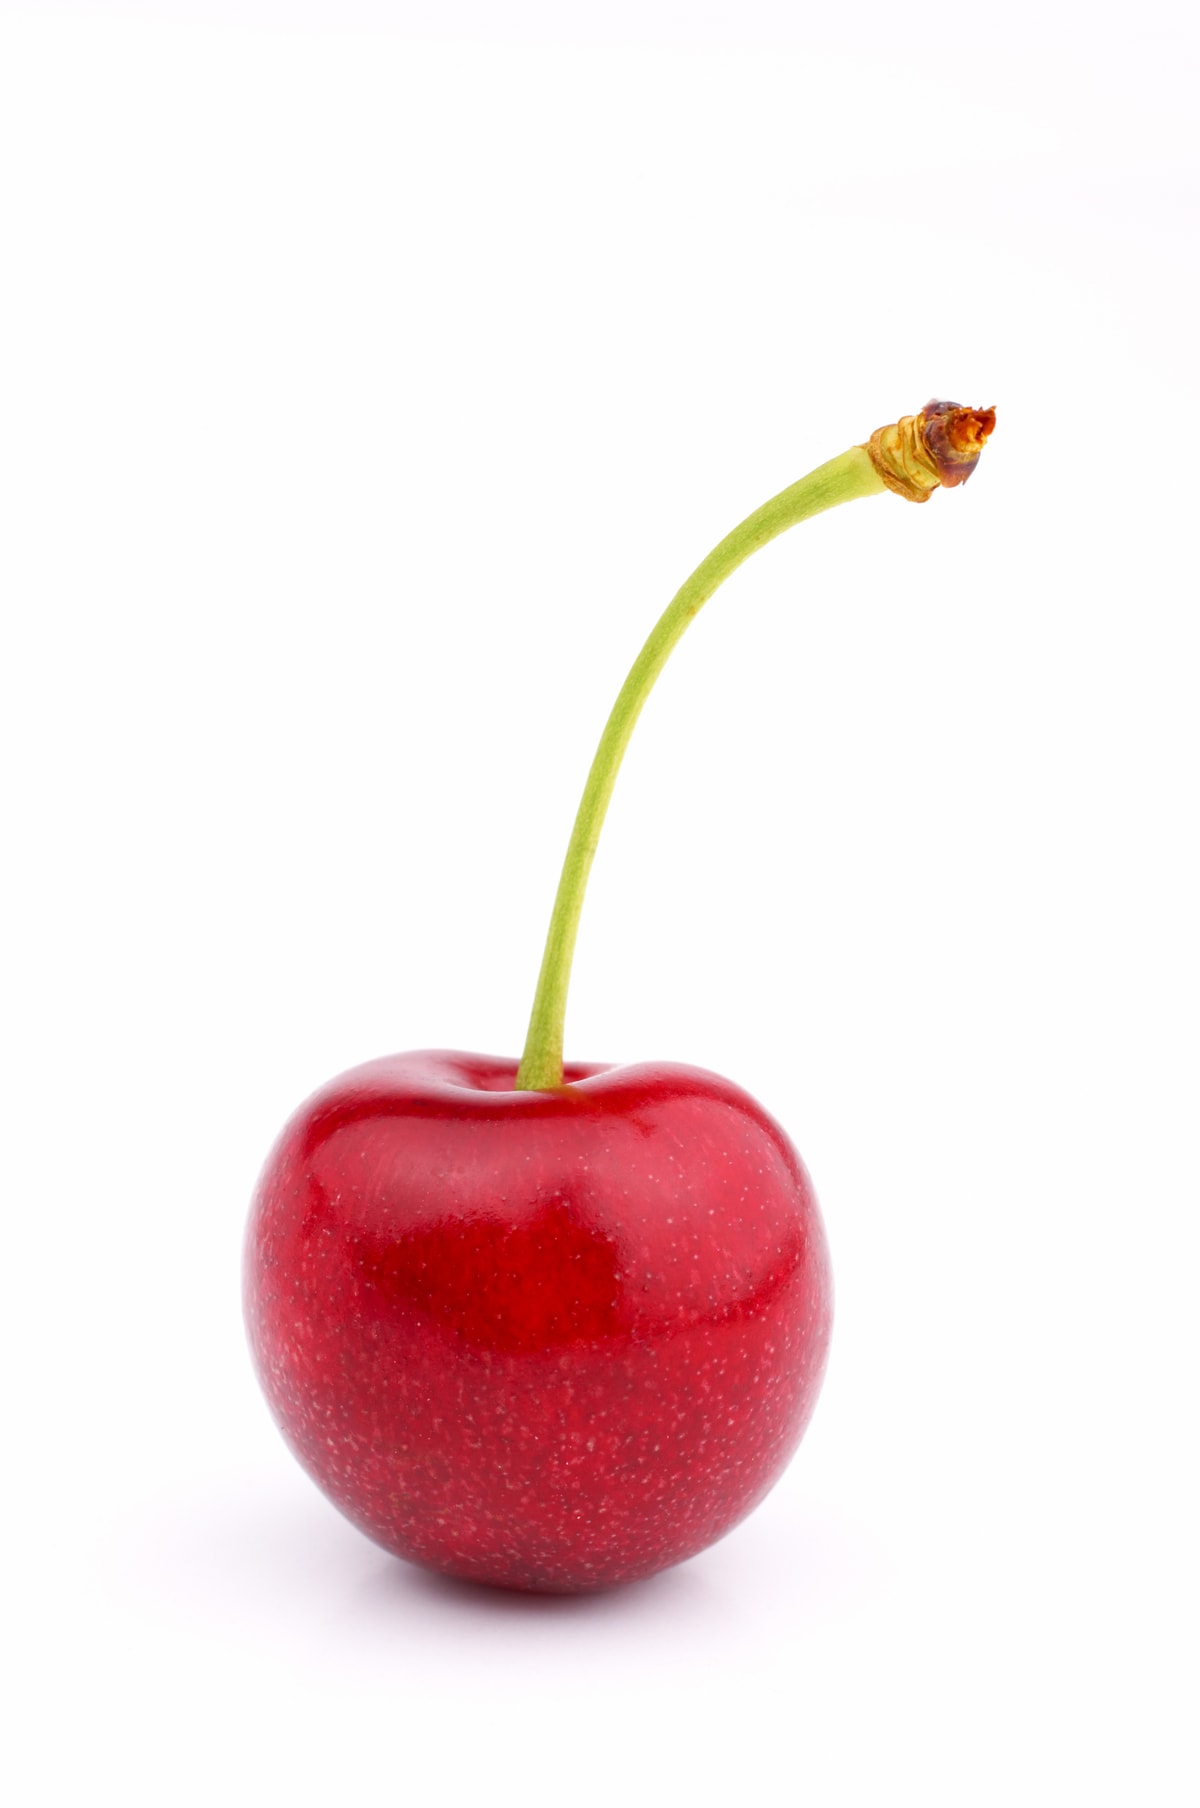 Why we like cherries - Healthy Food Guide